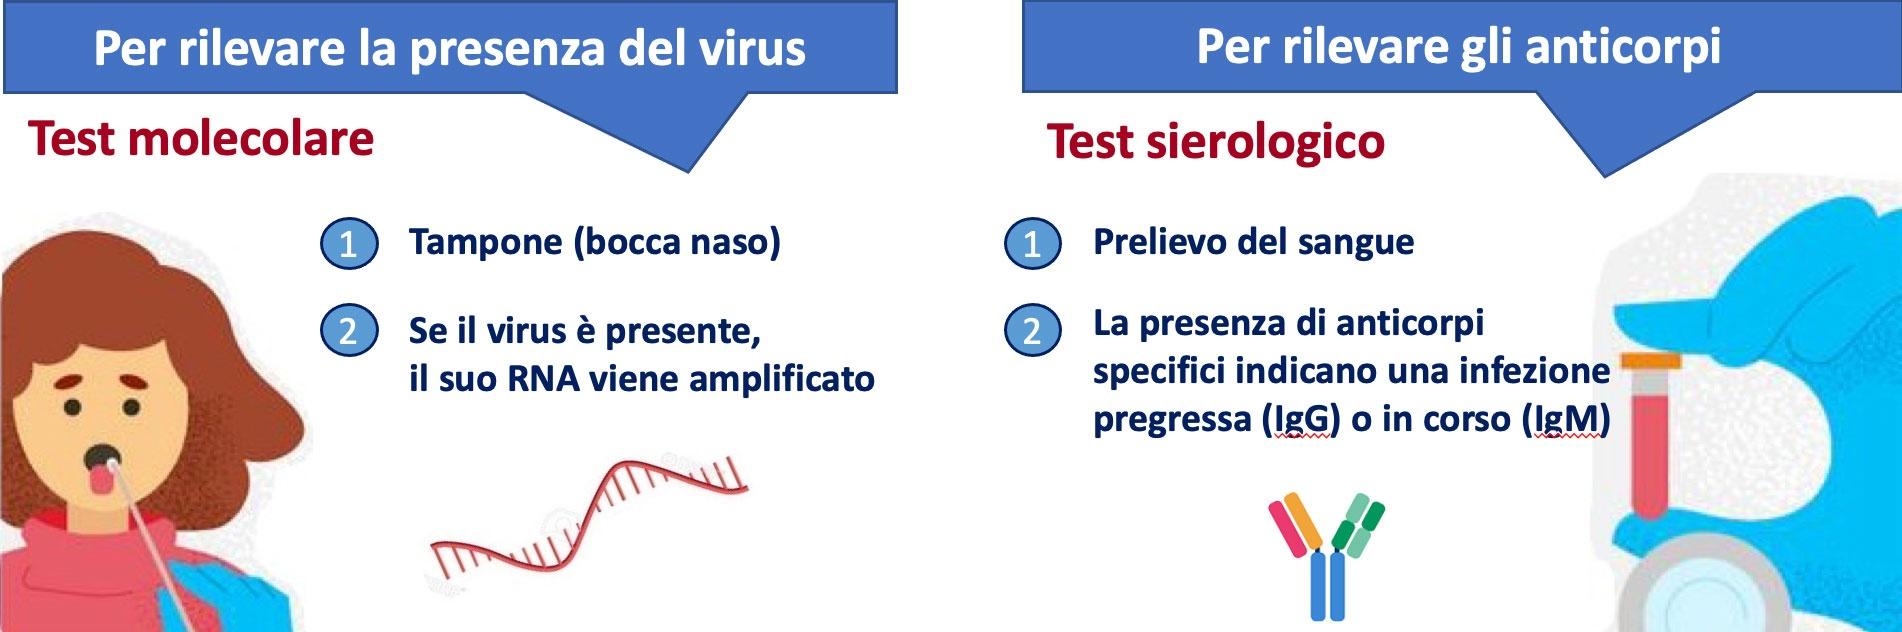 In questa figura viene illustrato la differenza tra test molecolare e test sierologico. Questi test ci aiutano a scoprire la presenza nel nostro corpo del  virus SARS-CoV-2. Il test molecolare si effettua tramite tampone orofaringeo ed è l’esame diagnostico di riferimento per rilevare la presenza del nuovo Coronavirus, perché mette in evidenza il materiale genetico (RNA) del virus. Esso ci fornisce “un’istantanea” dell’infezione. Il test sierologico viene eseguito sul sangue, rileva la presenza di anticorpi prodotti dal nostro organismo e diretti contro il virus, esso ci “racconta la storia della malattia” .